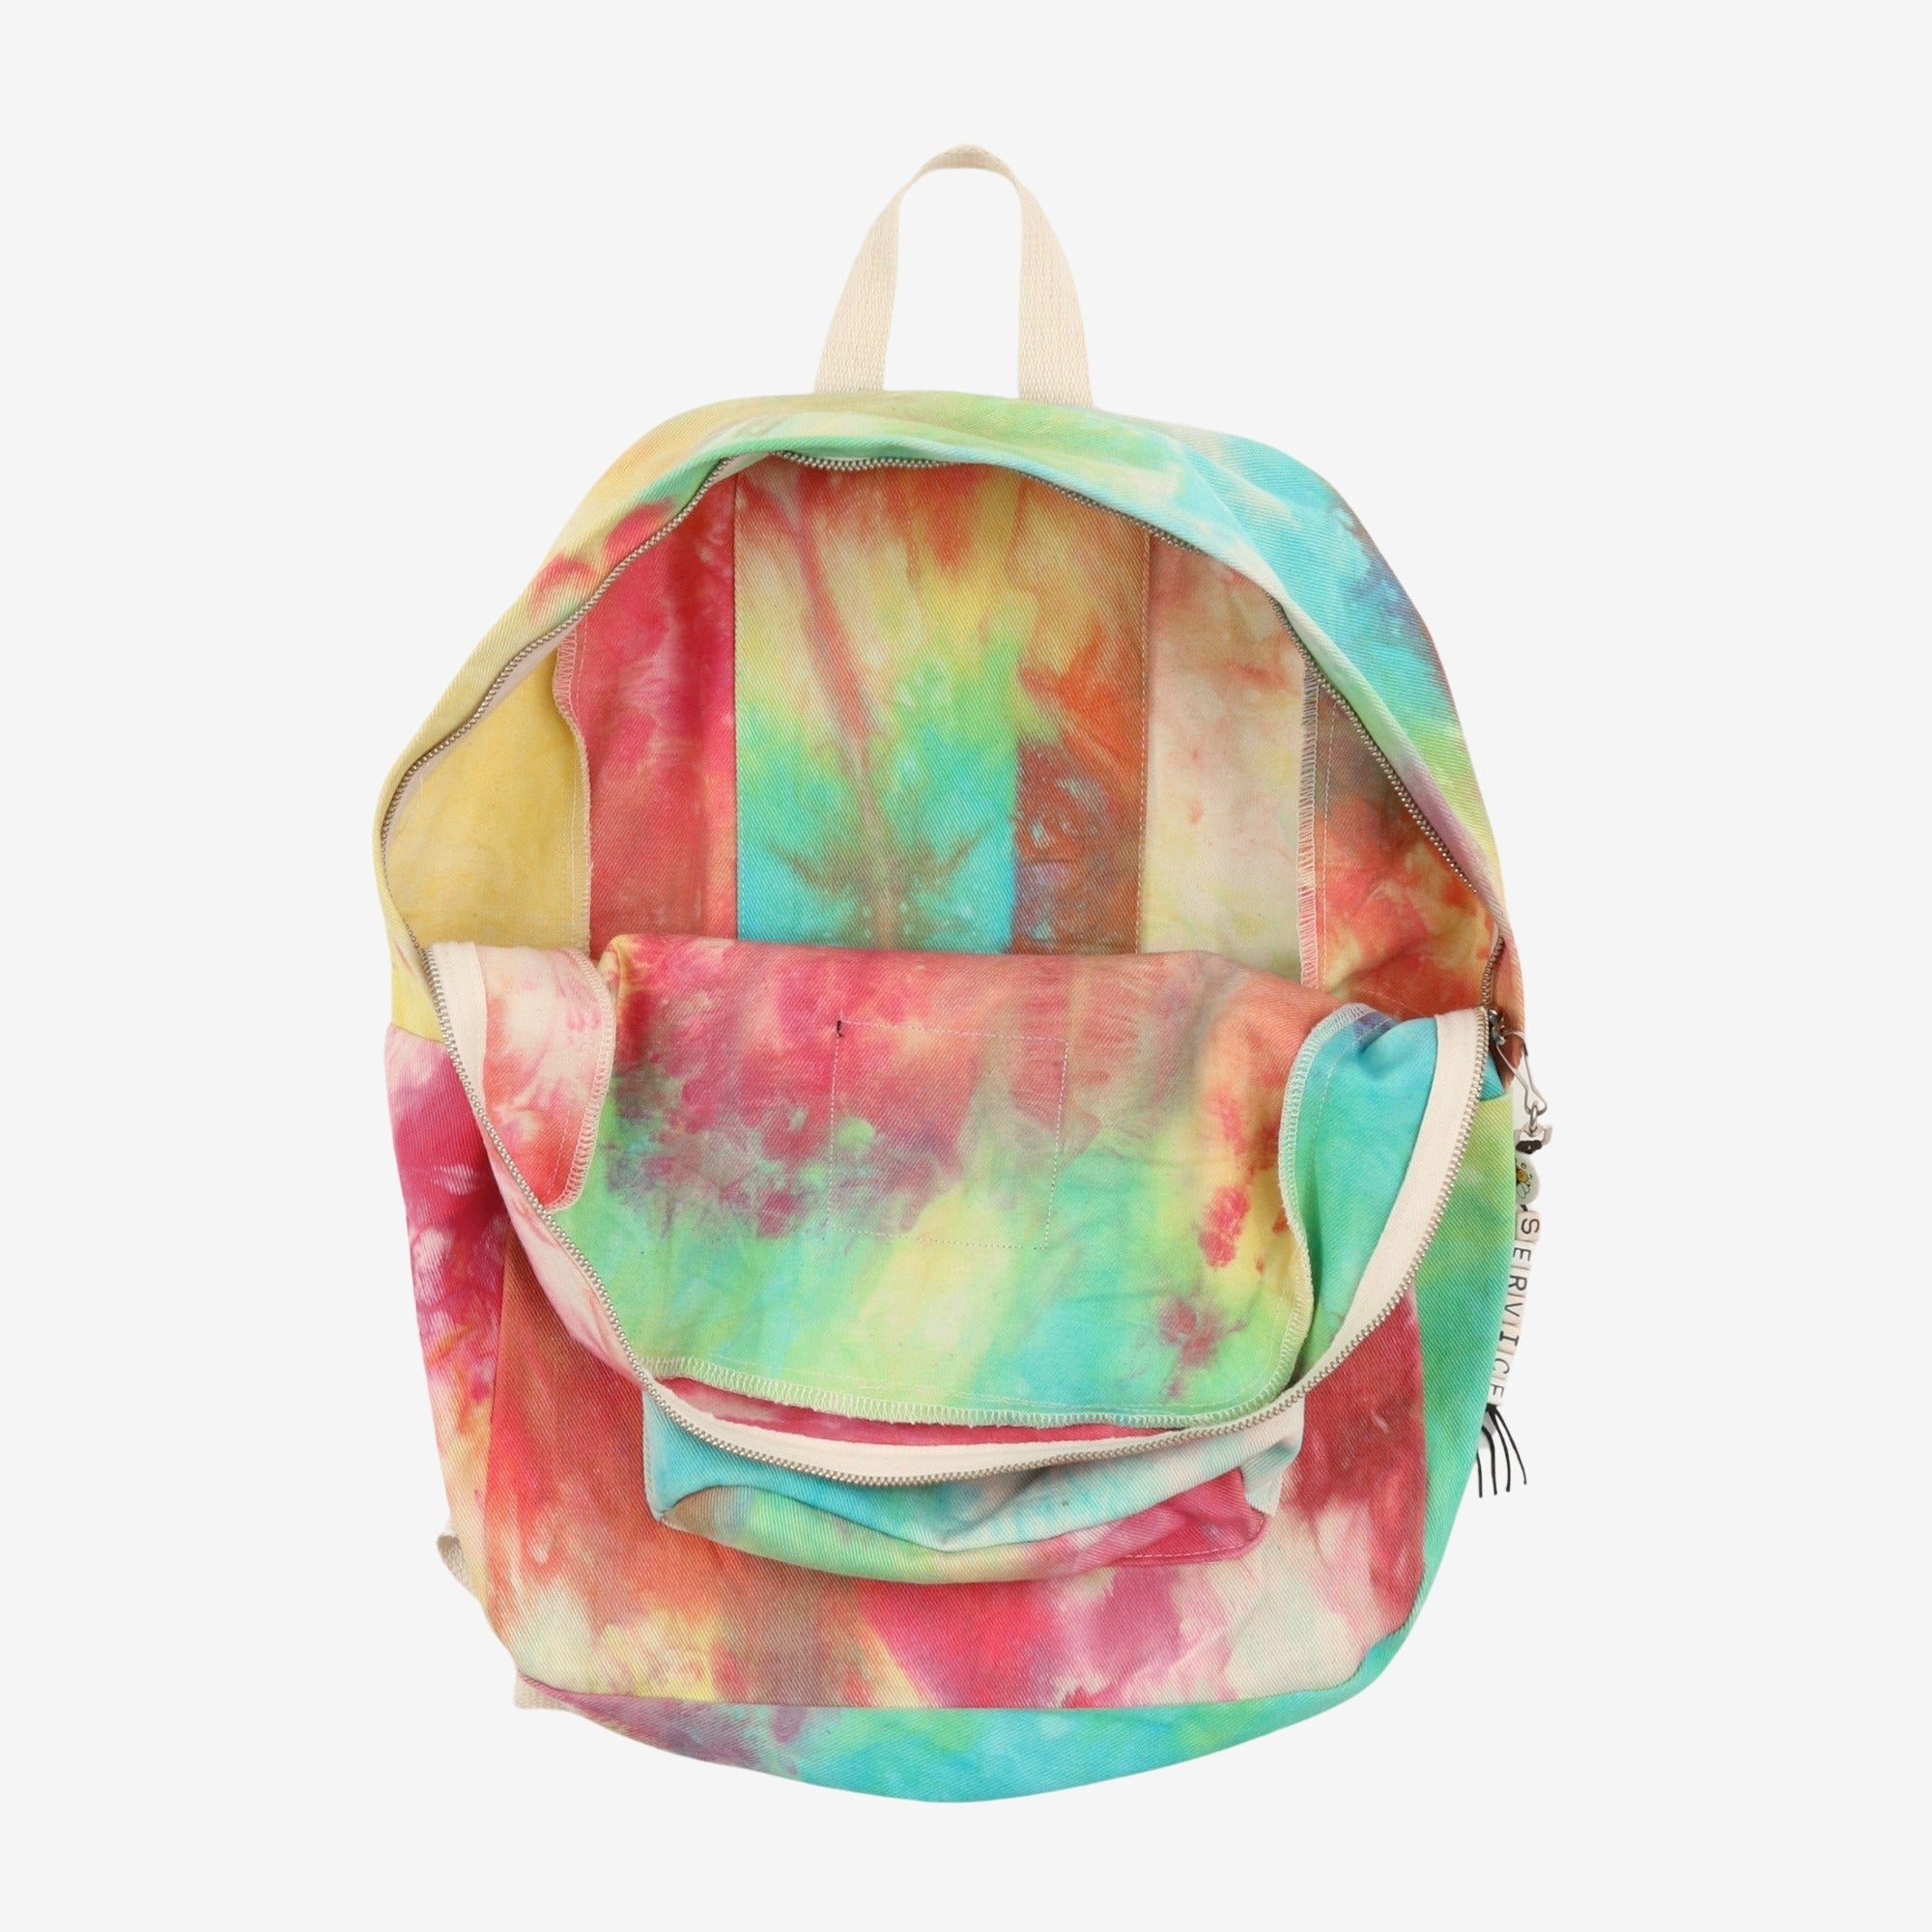 Tie-Dye Backpack